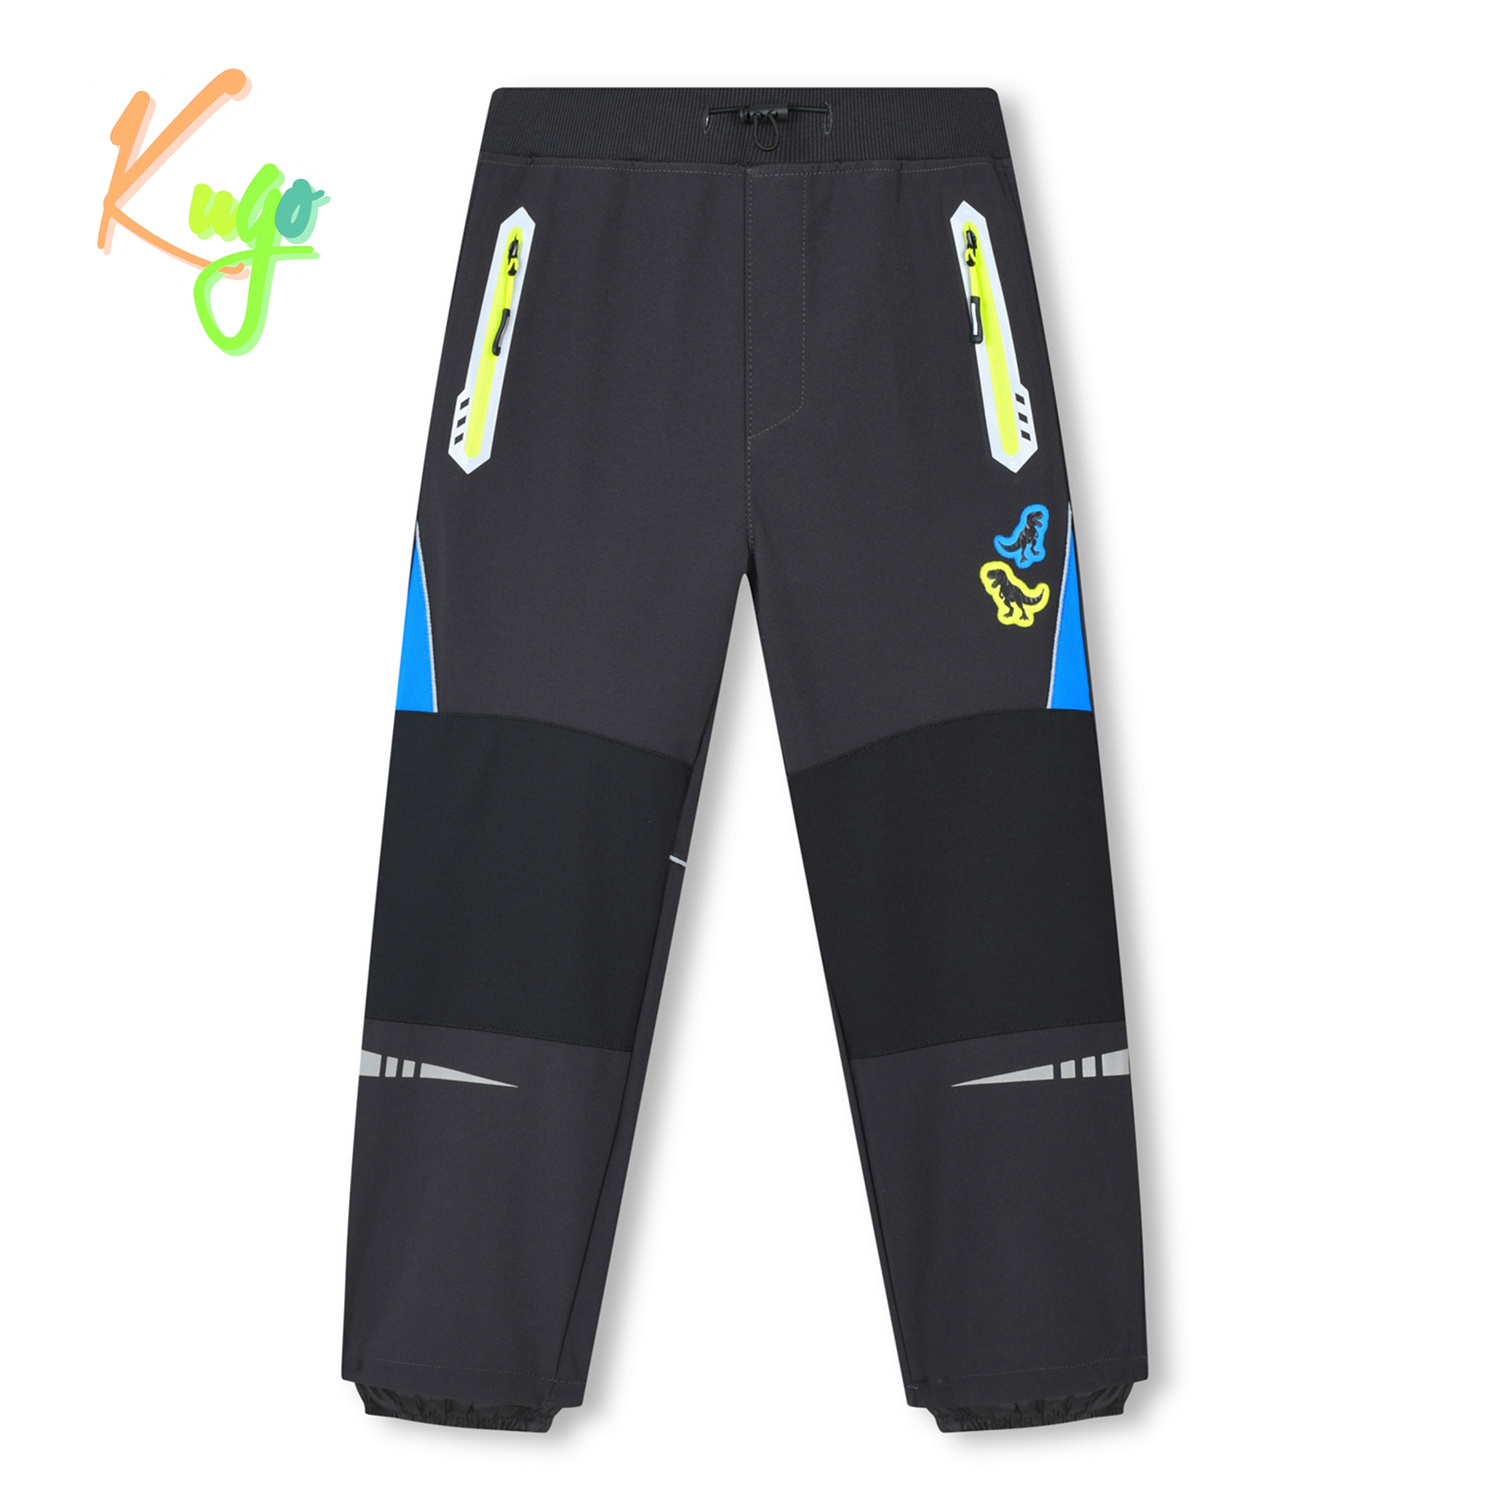 Chlapecké softshellové kalhoty - KUGO HK3116, tmavě šedá / signální zipy Barva: Šedá, Velikost: 122